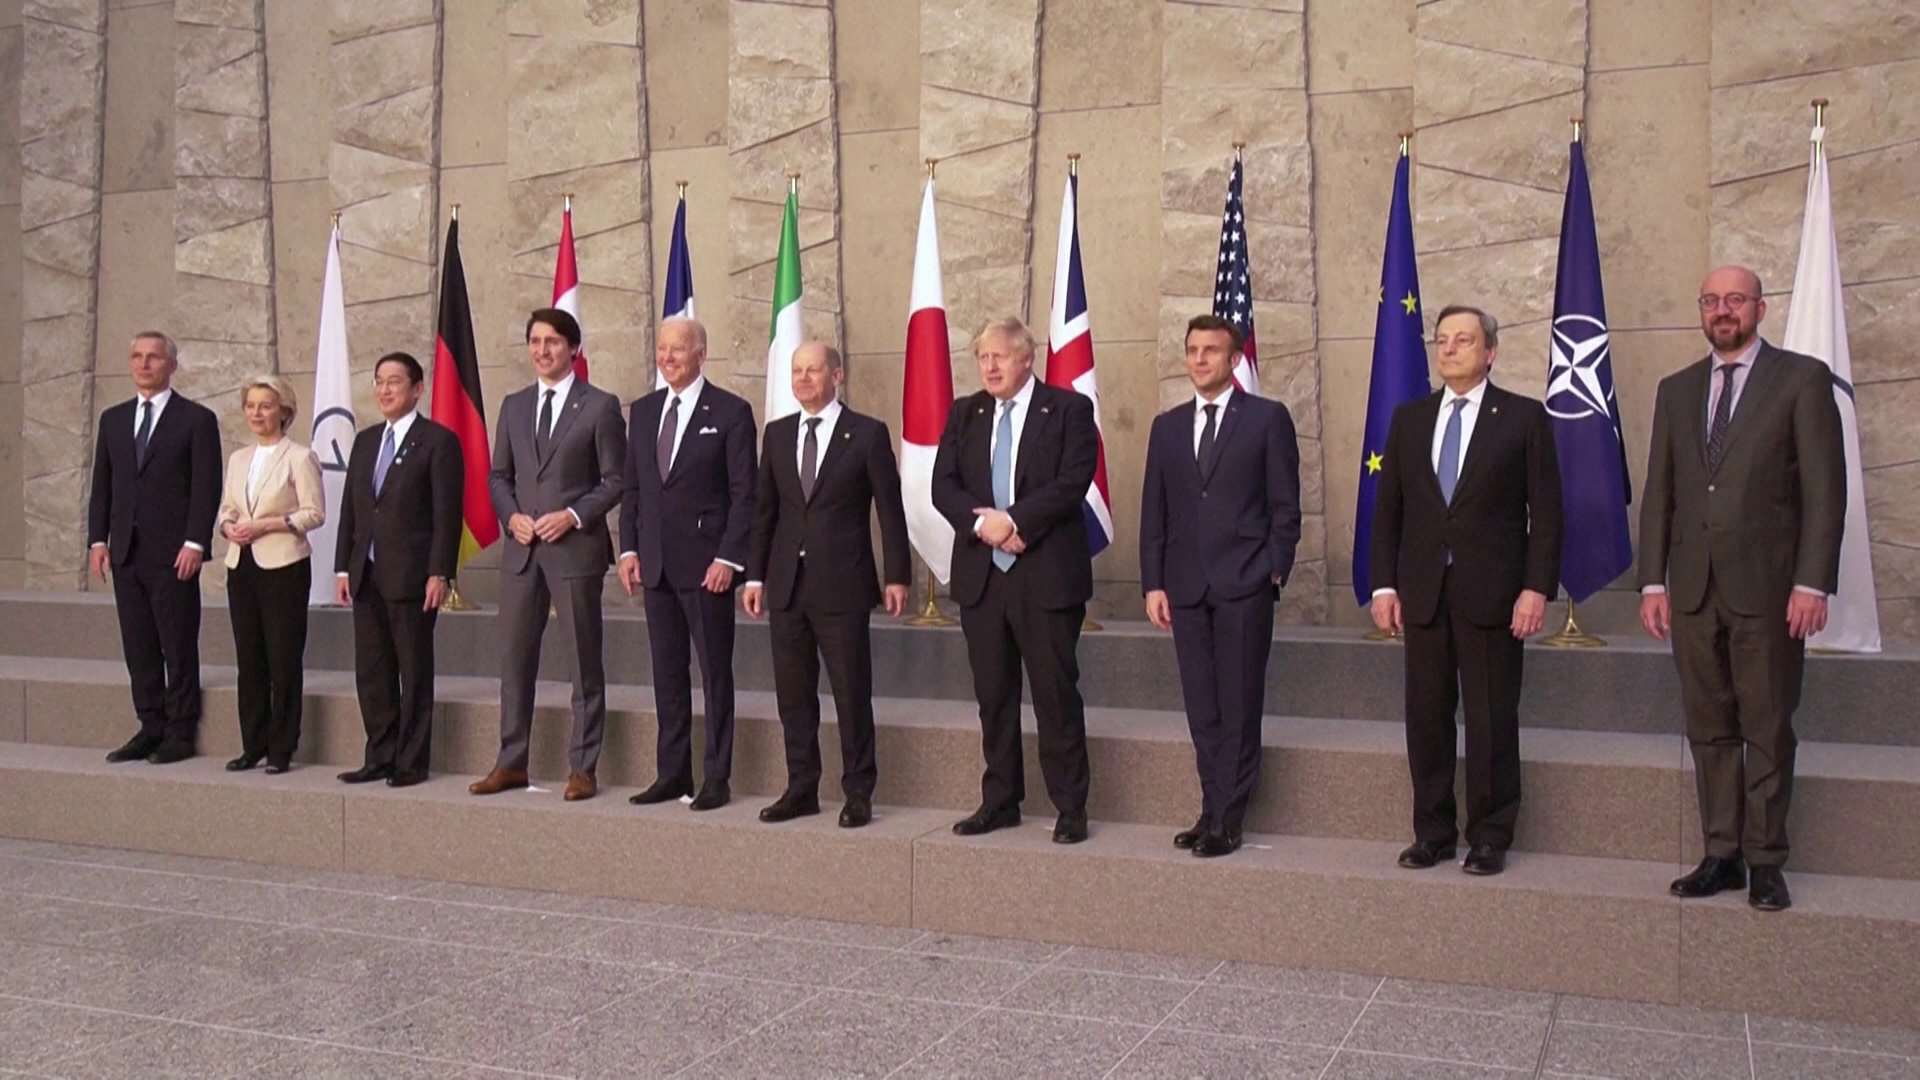 További szankciókat sürget Oroszországgal szemben a G7